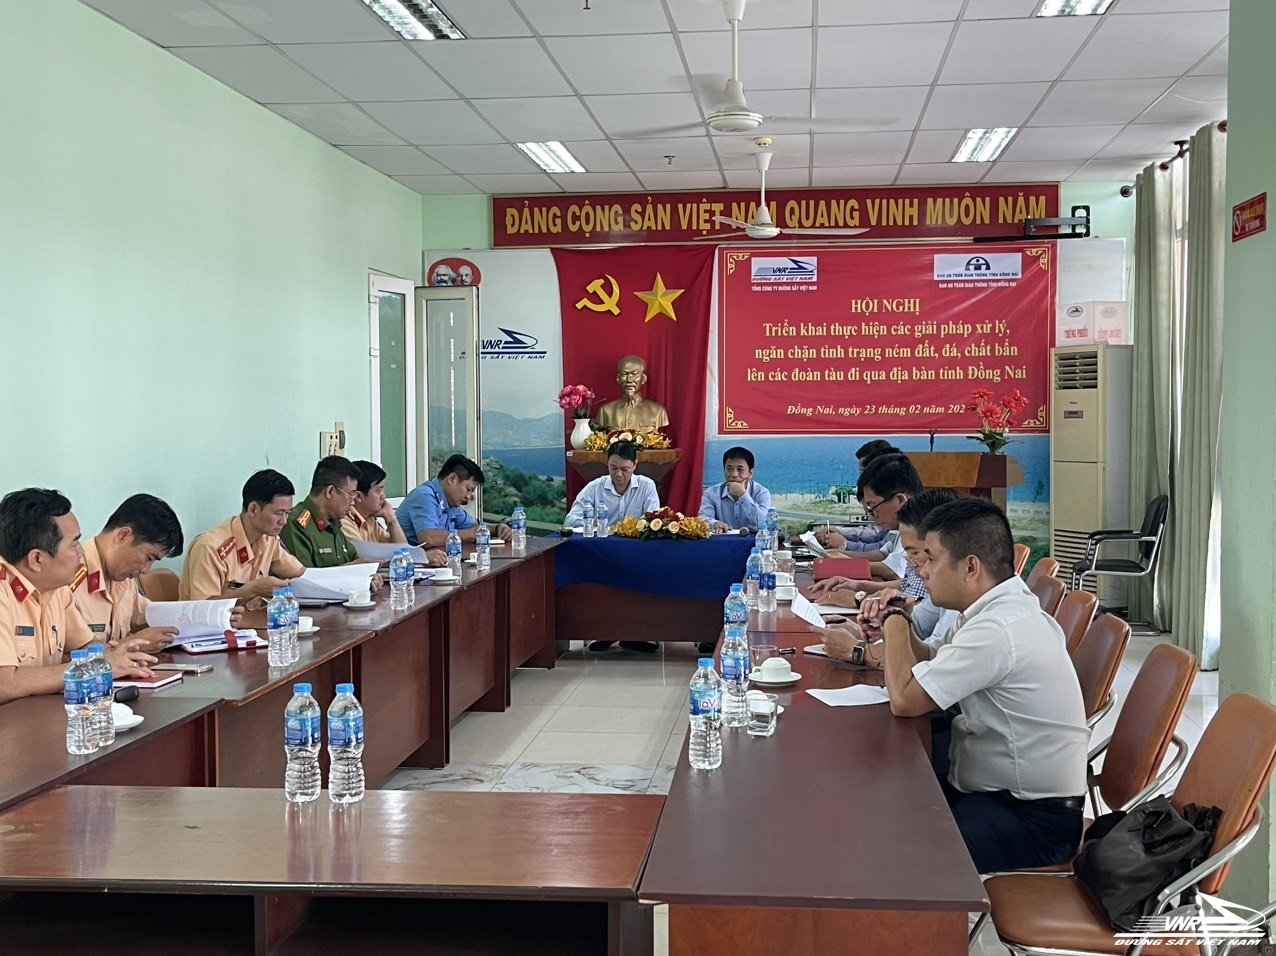 CN KTĐS Sài Gòn phối hợp với tỉnh Đồng nai ngăn chặn tình trạng ném đất, đá lên tàu